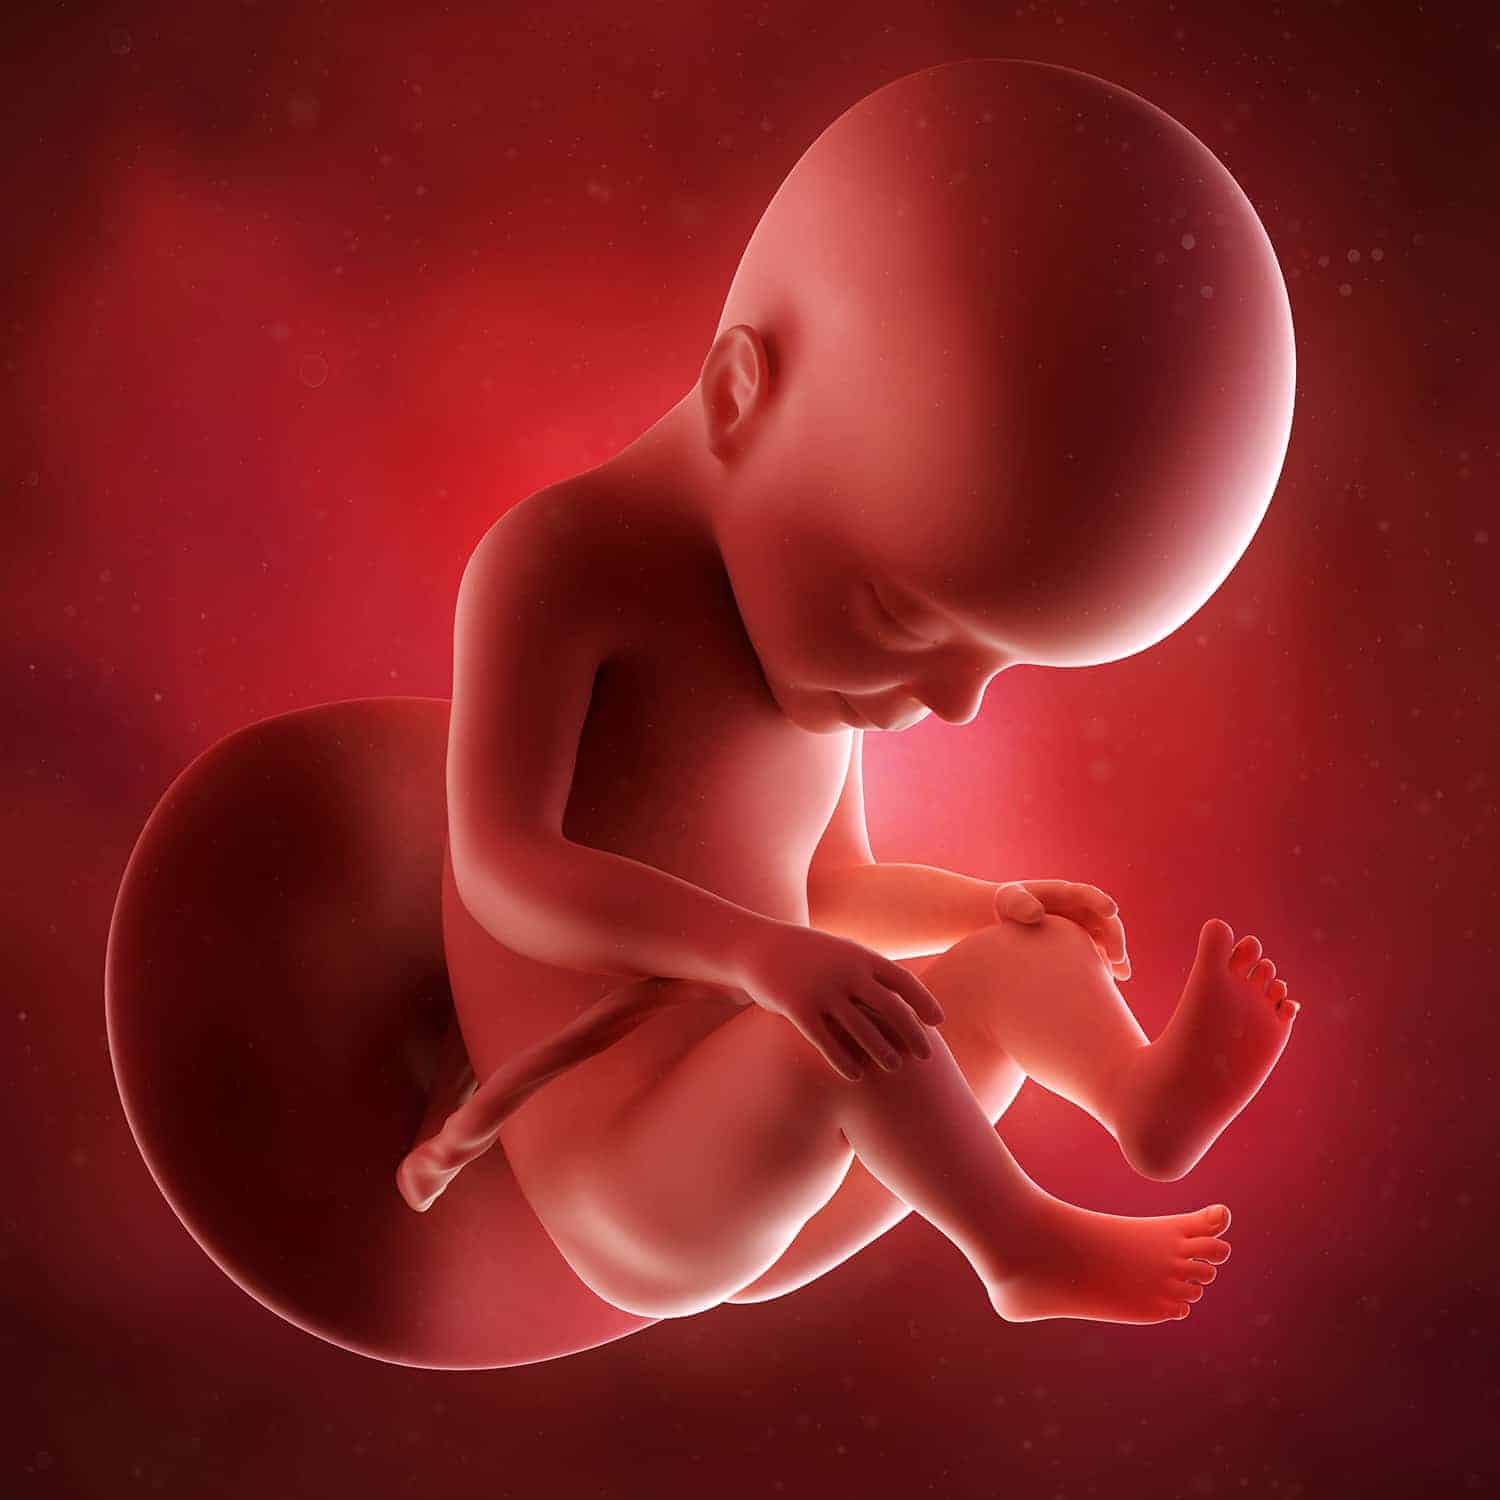 Tại tuần 27, bé hoàn thiện dần về cấu trúc và chức năng các cơ quan trong cơ thể